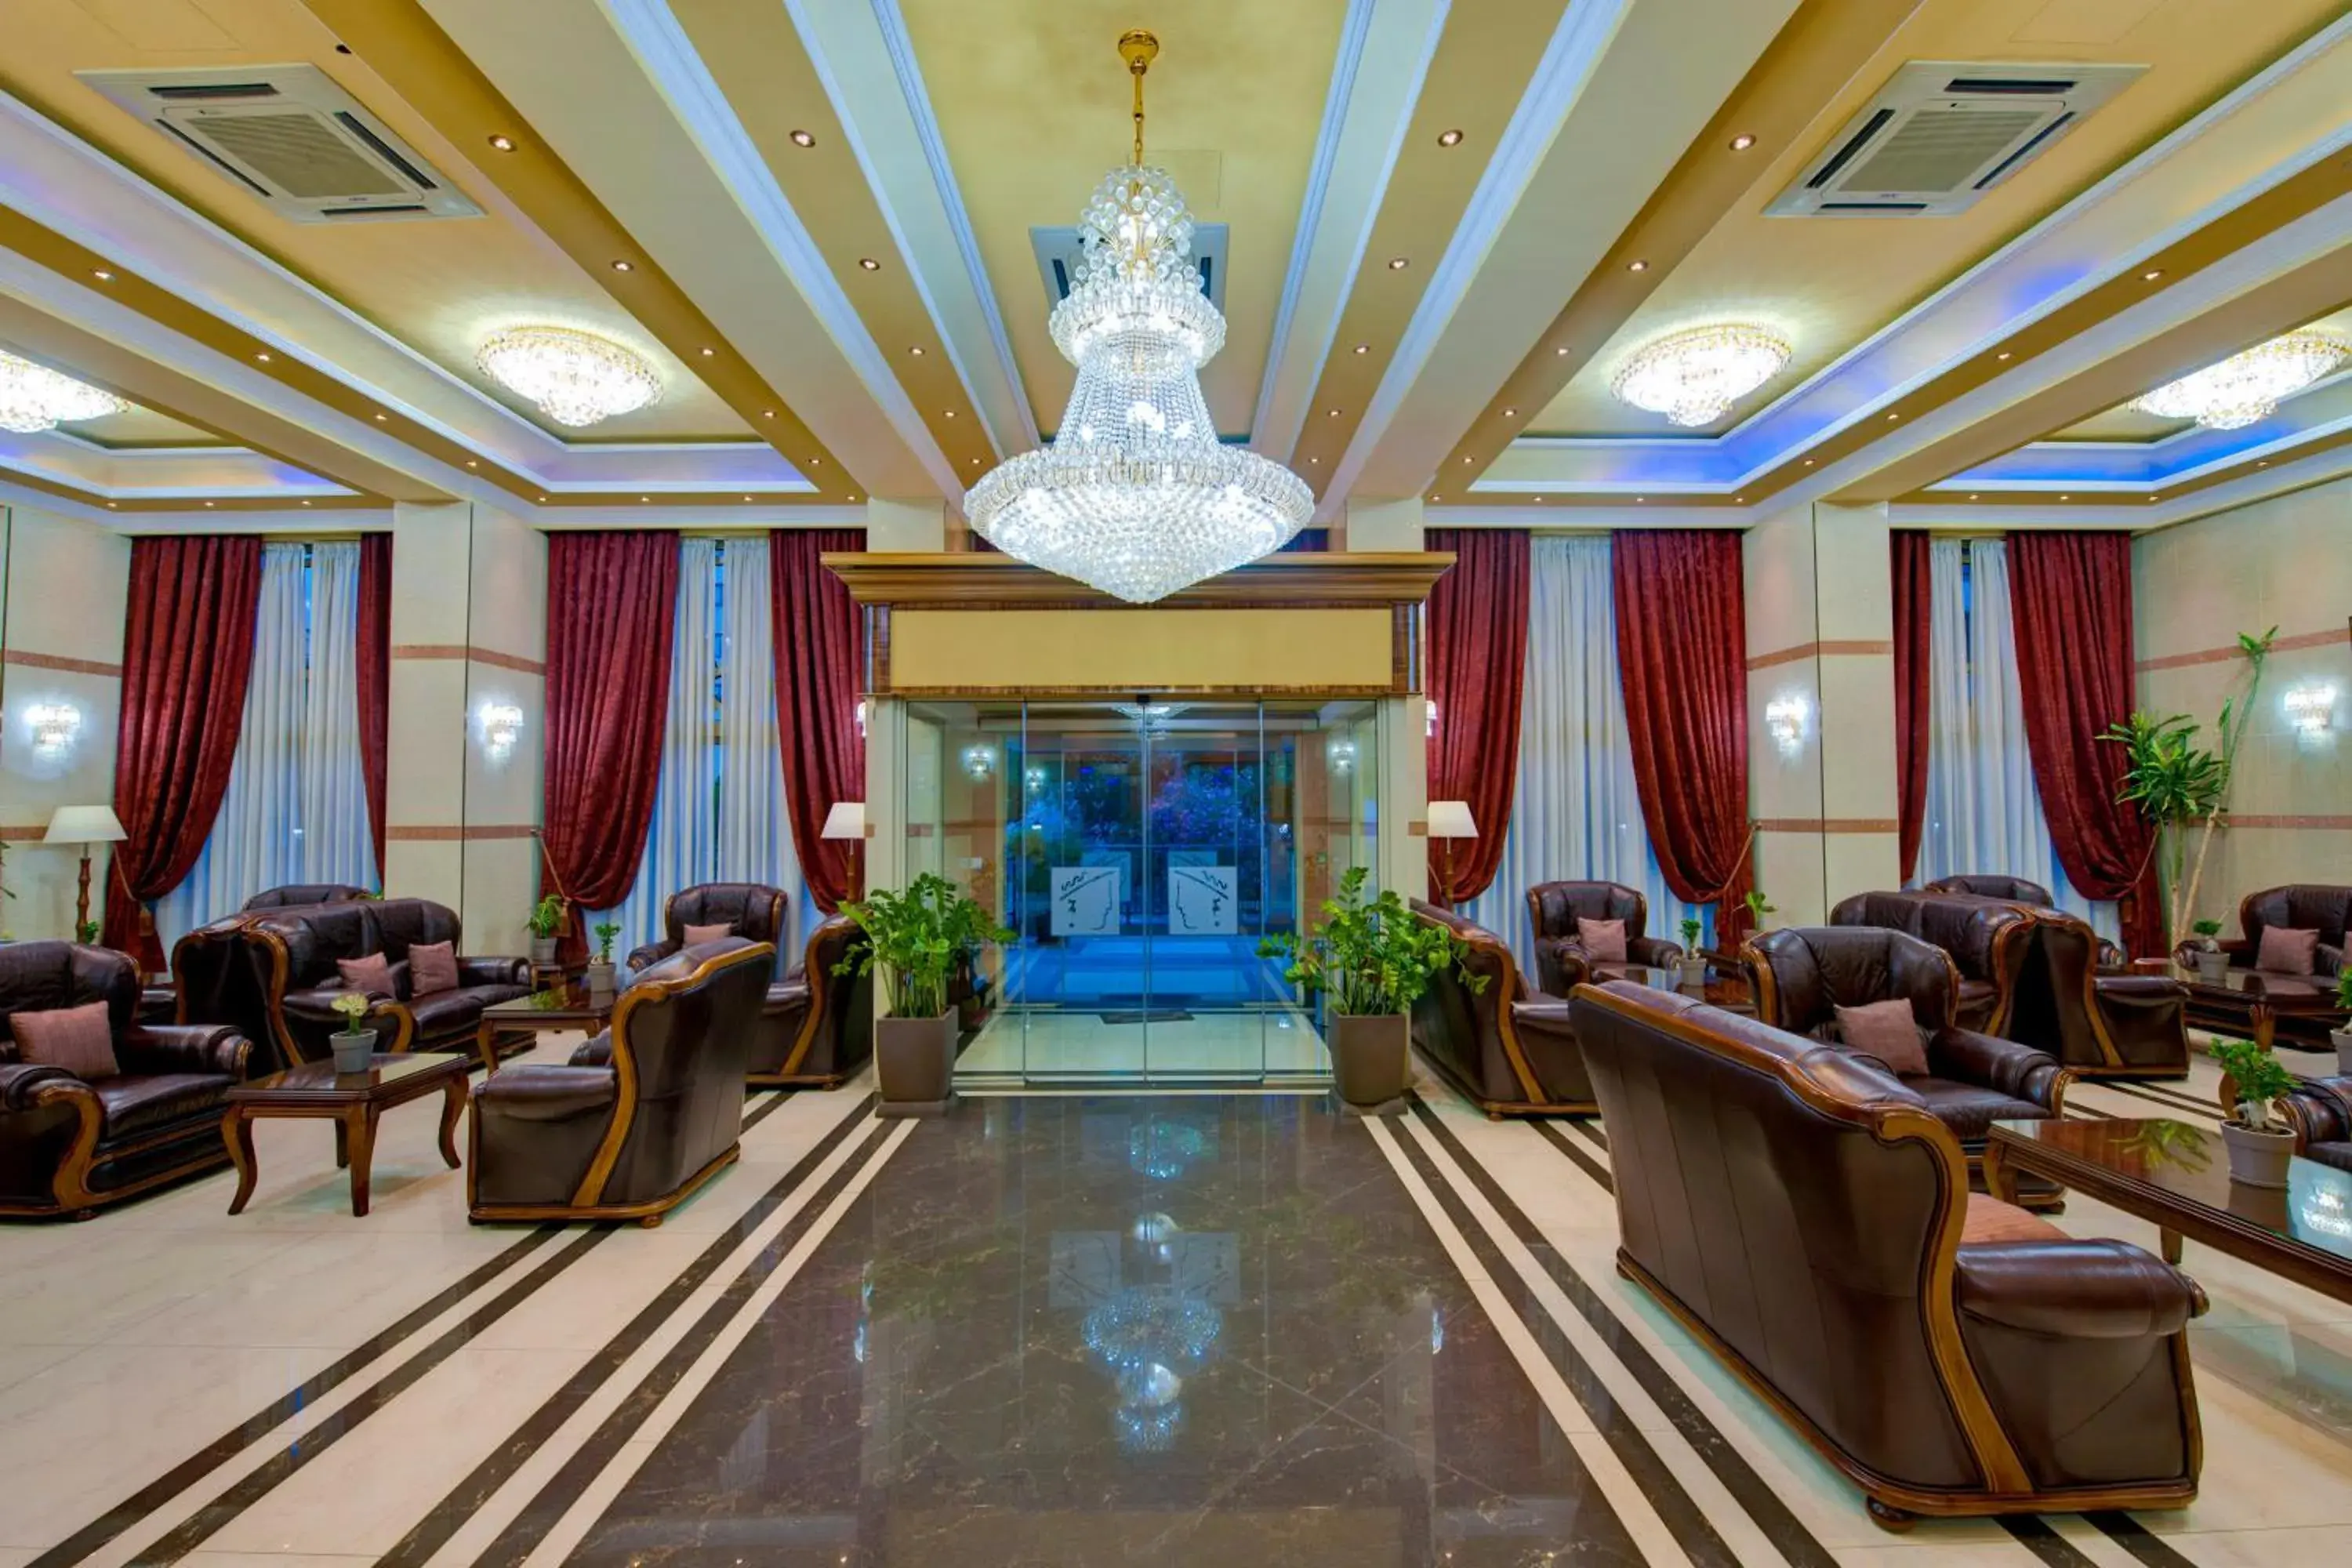 Lobby or reception in Semeli Hotel